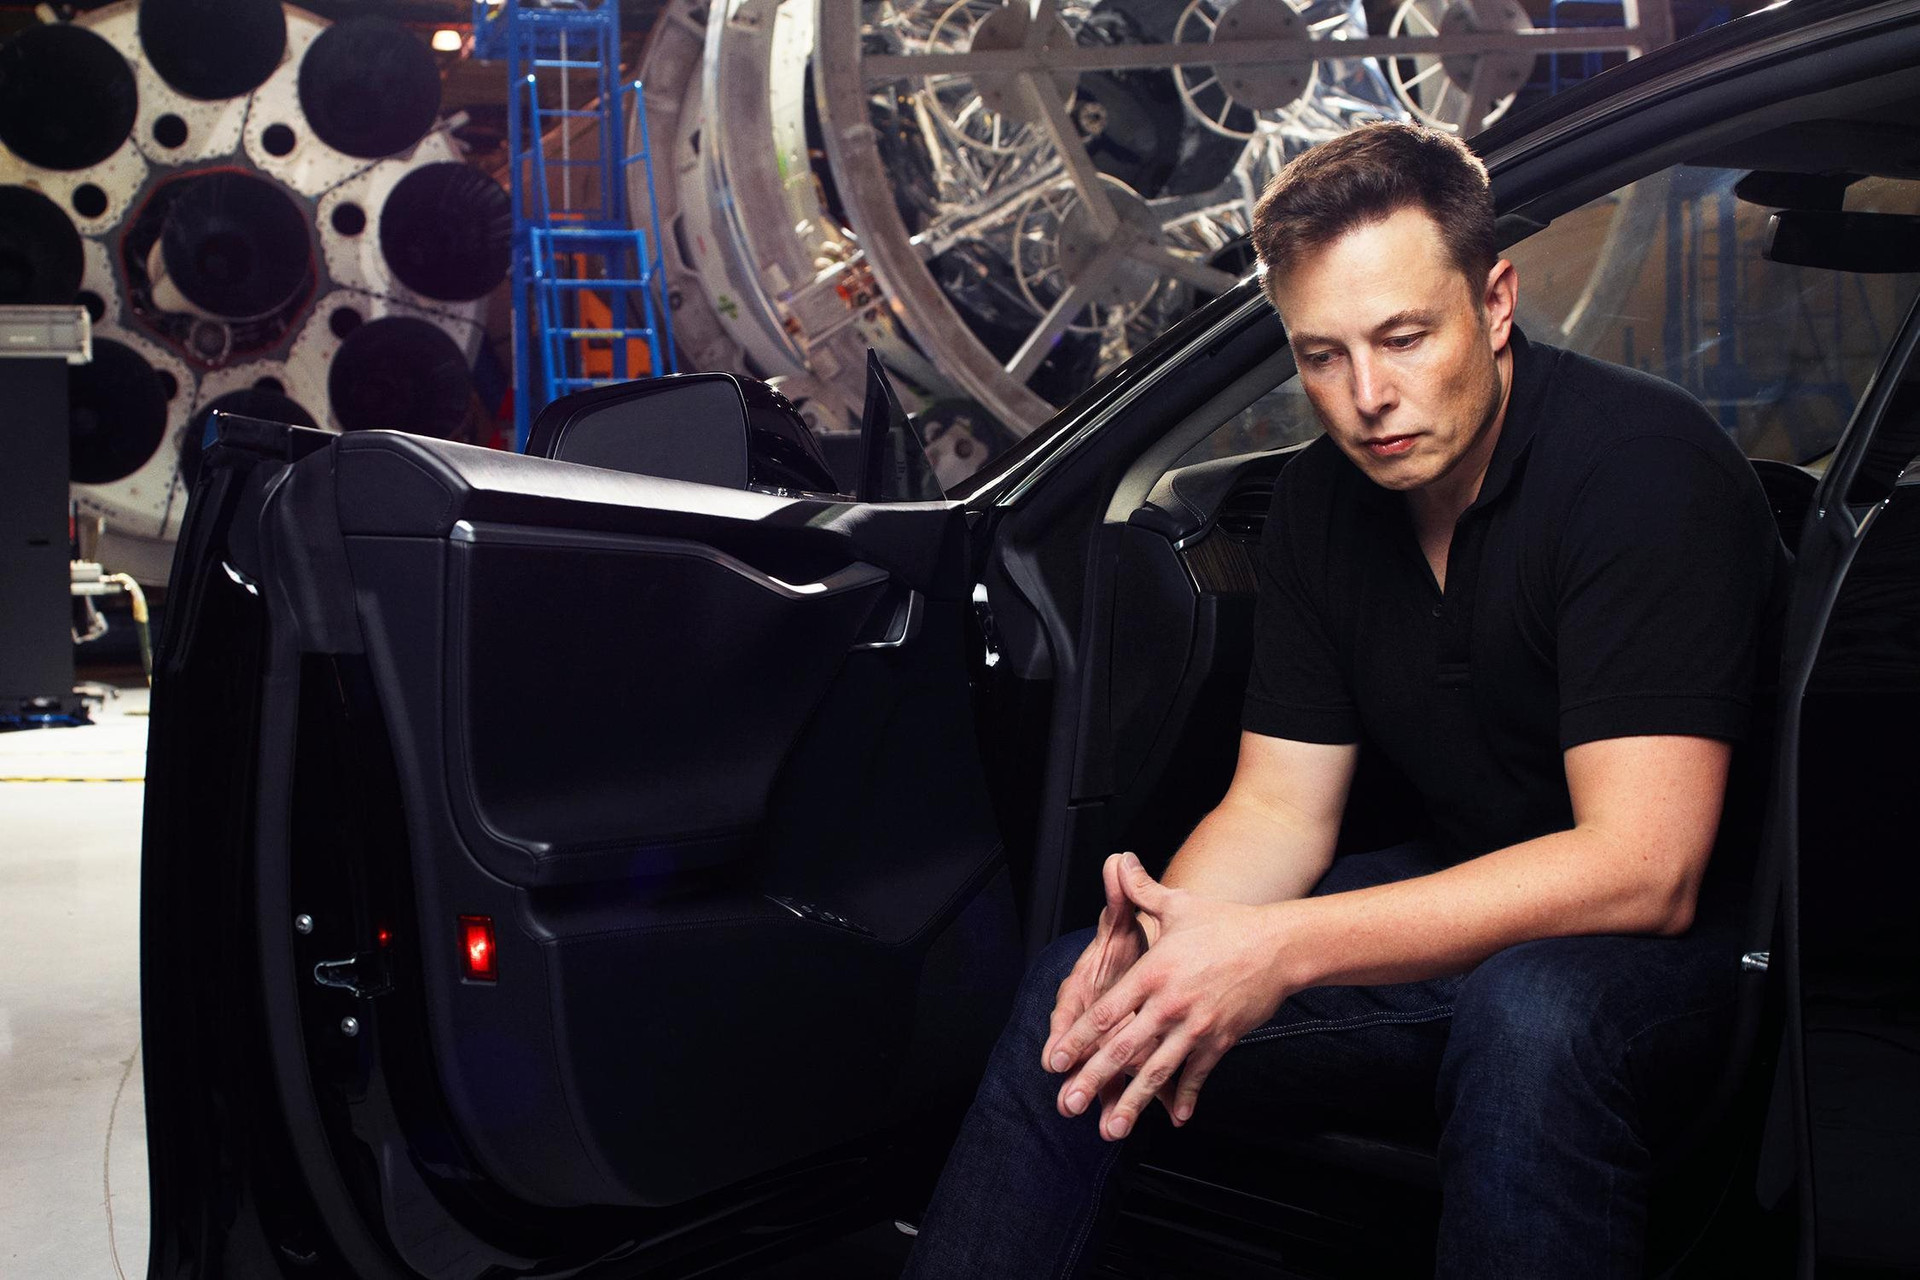 Liều ăn nhiều: SpaceX đã có lãi, tương lai thành 'kẻ thống trị vũ trụ' của Elon Musk không còn xa - Ảnh 4.